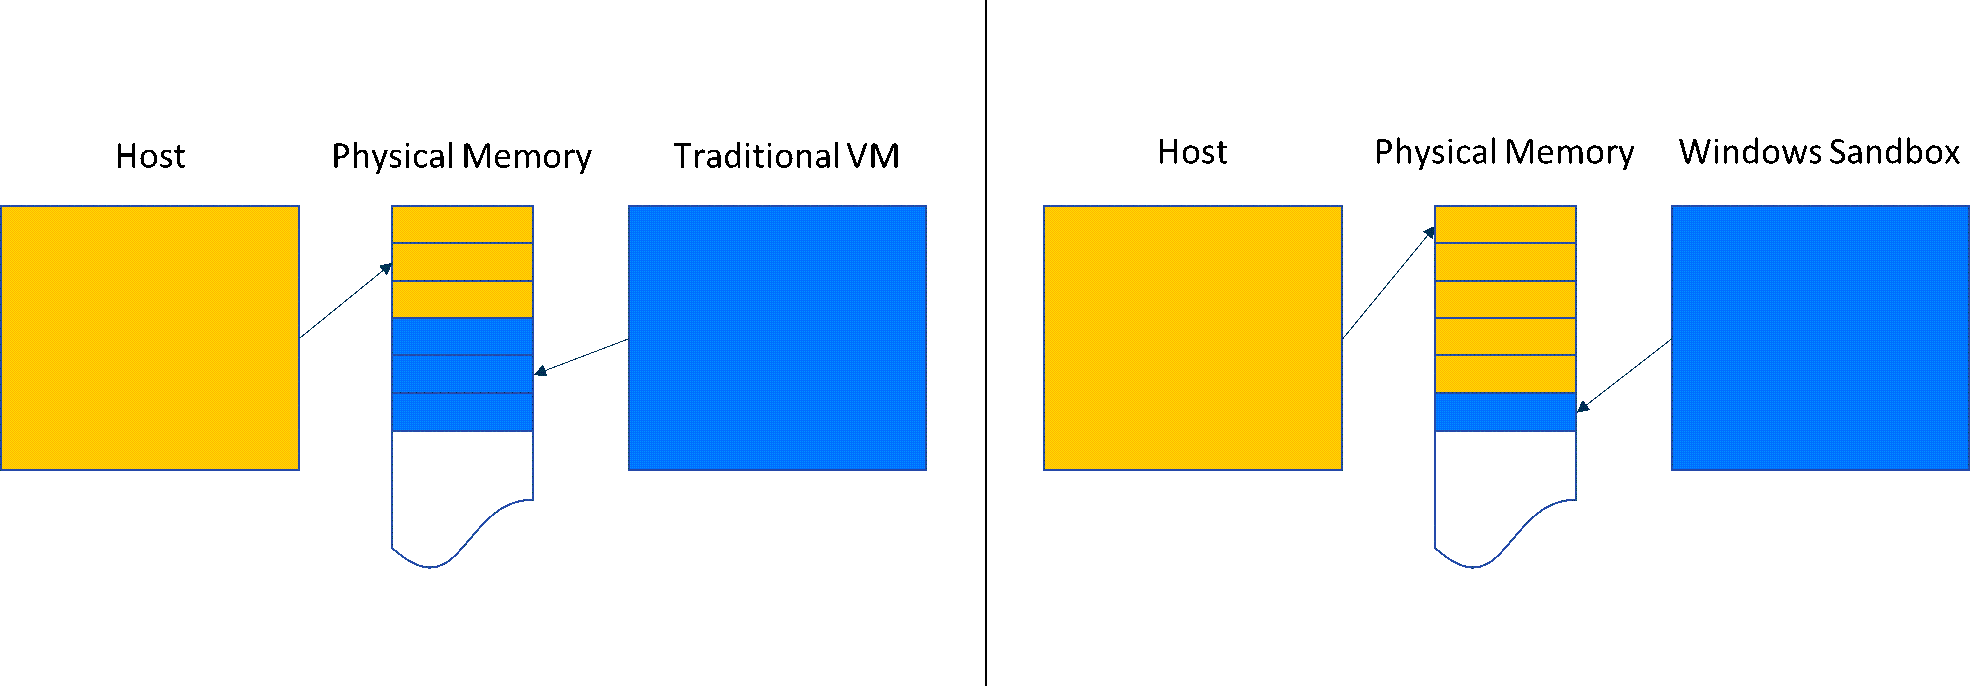 圖表會比較Windows 沙箱與傳統 VM 中的記憶體共用。